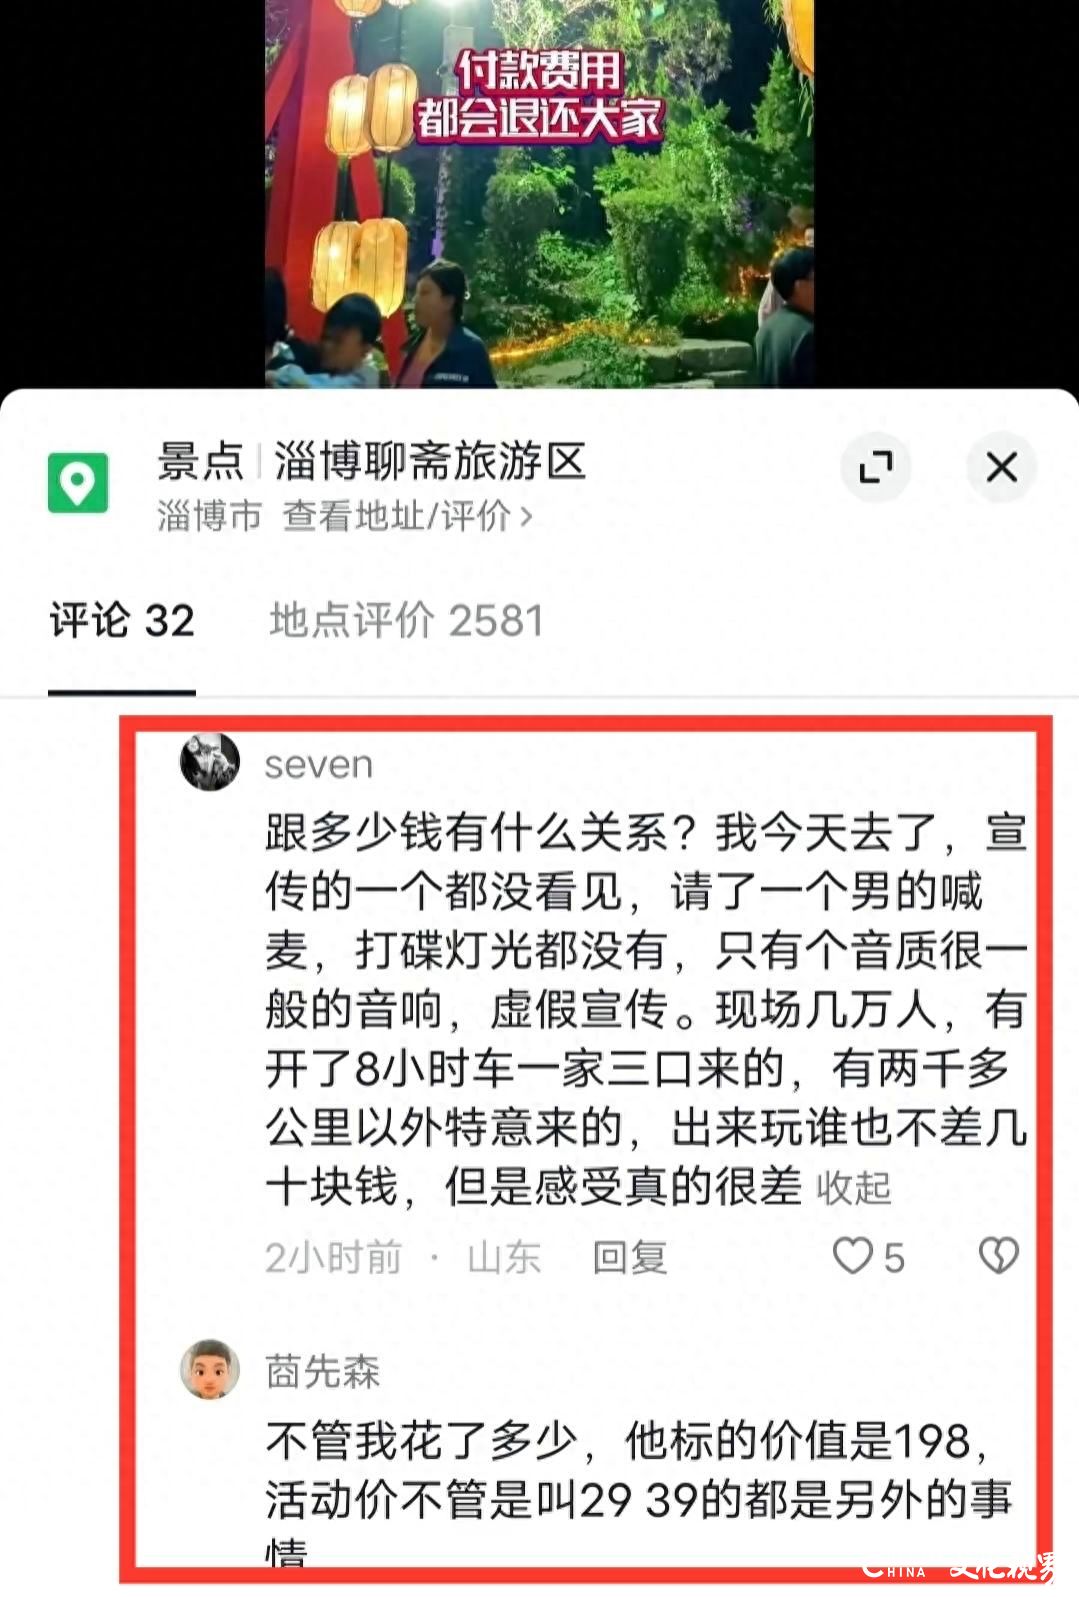 淄博聊斋园被游客质疑演出虚假宣传要求退票，发道歉信后却又删除